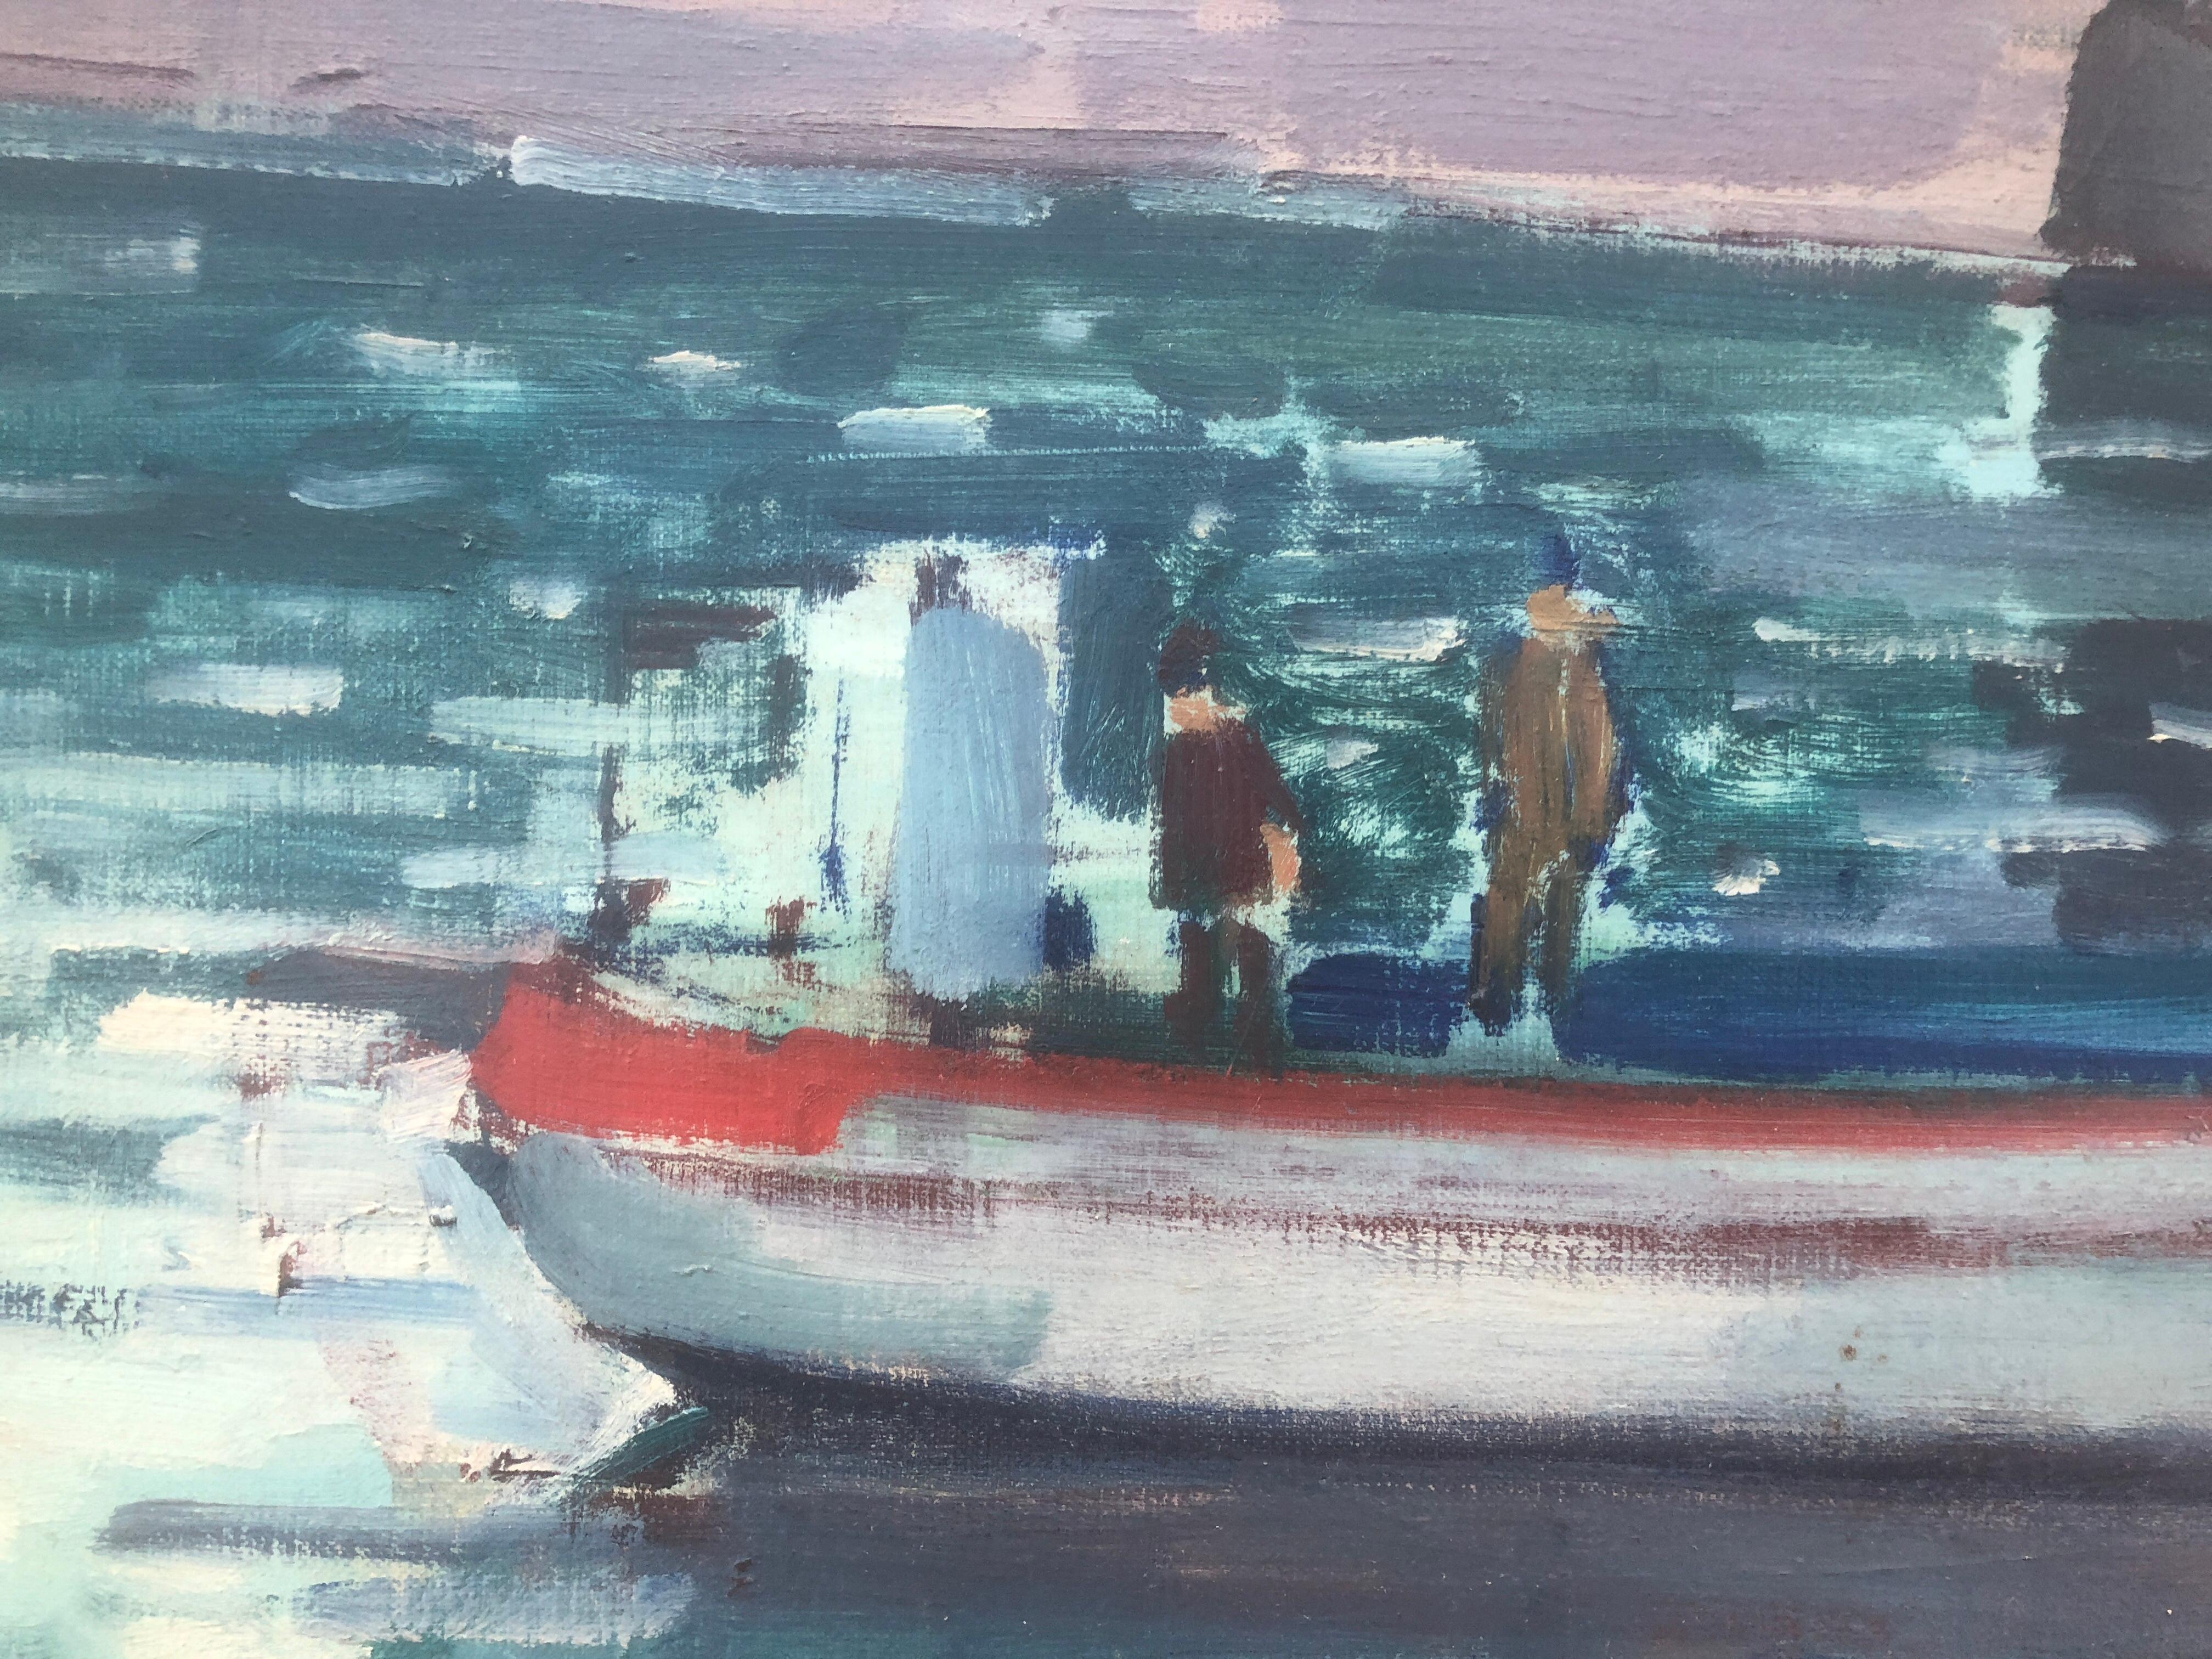 Cadaques, Ölgemälde auf Leinwand, Spanien, spanische Meereslandschaft, Cadaques (Post-Impressionismus), Painting, von Rafael Duran Benet